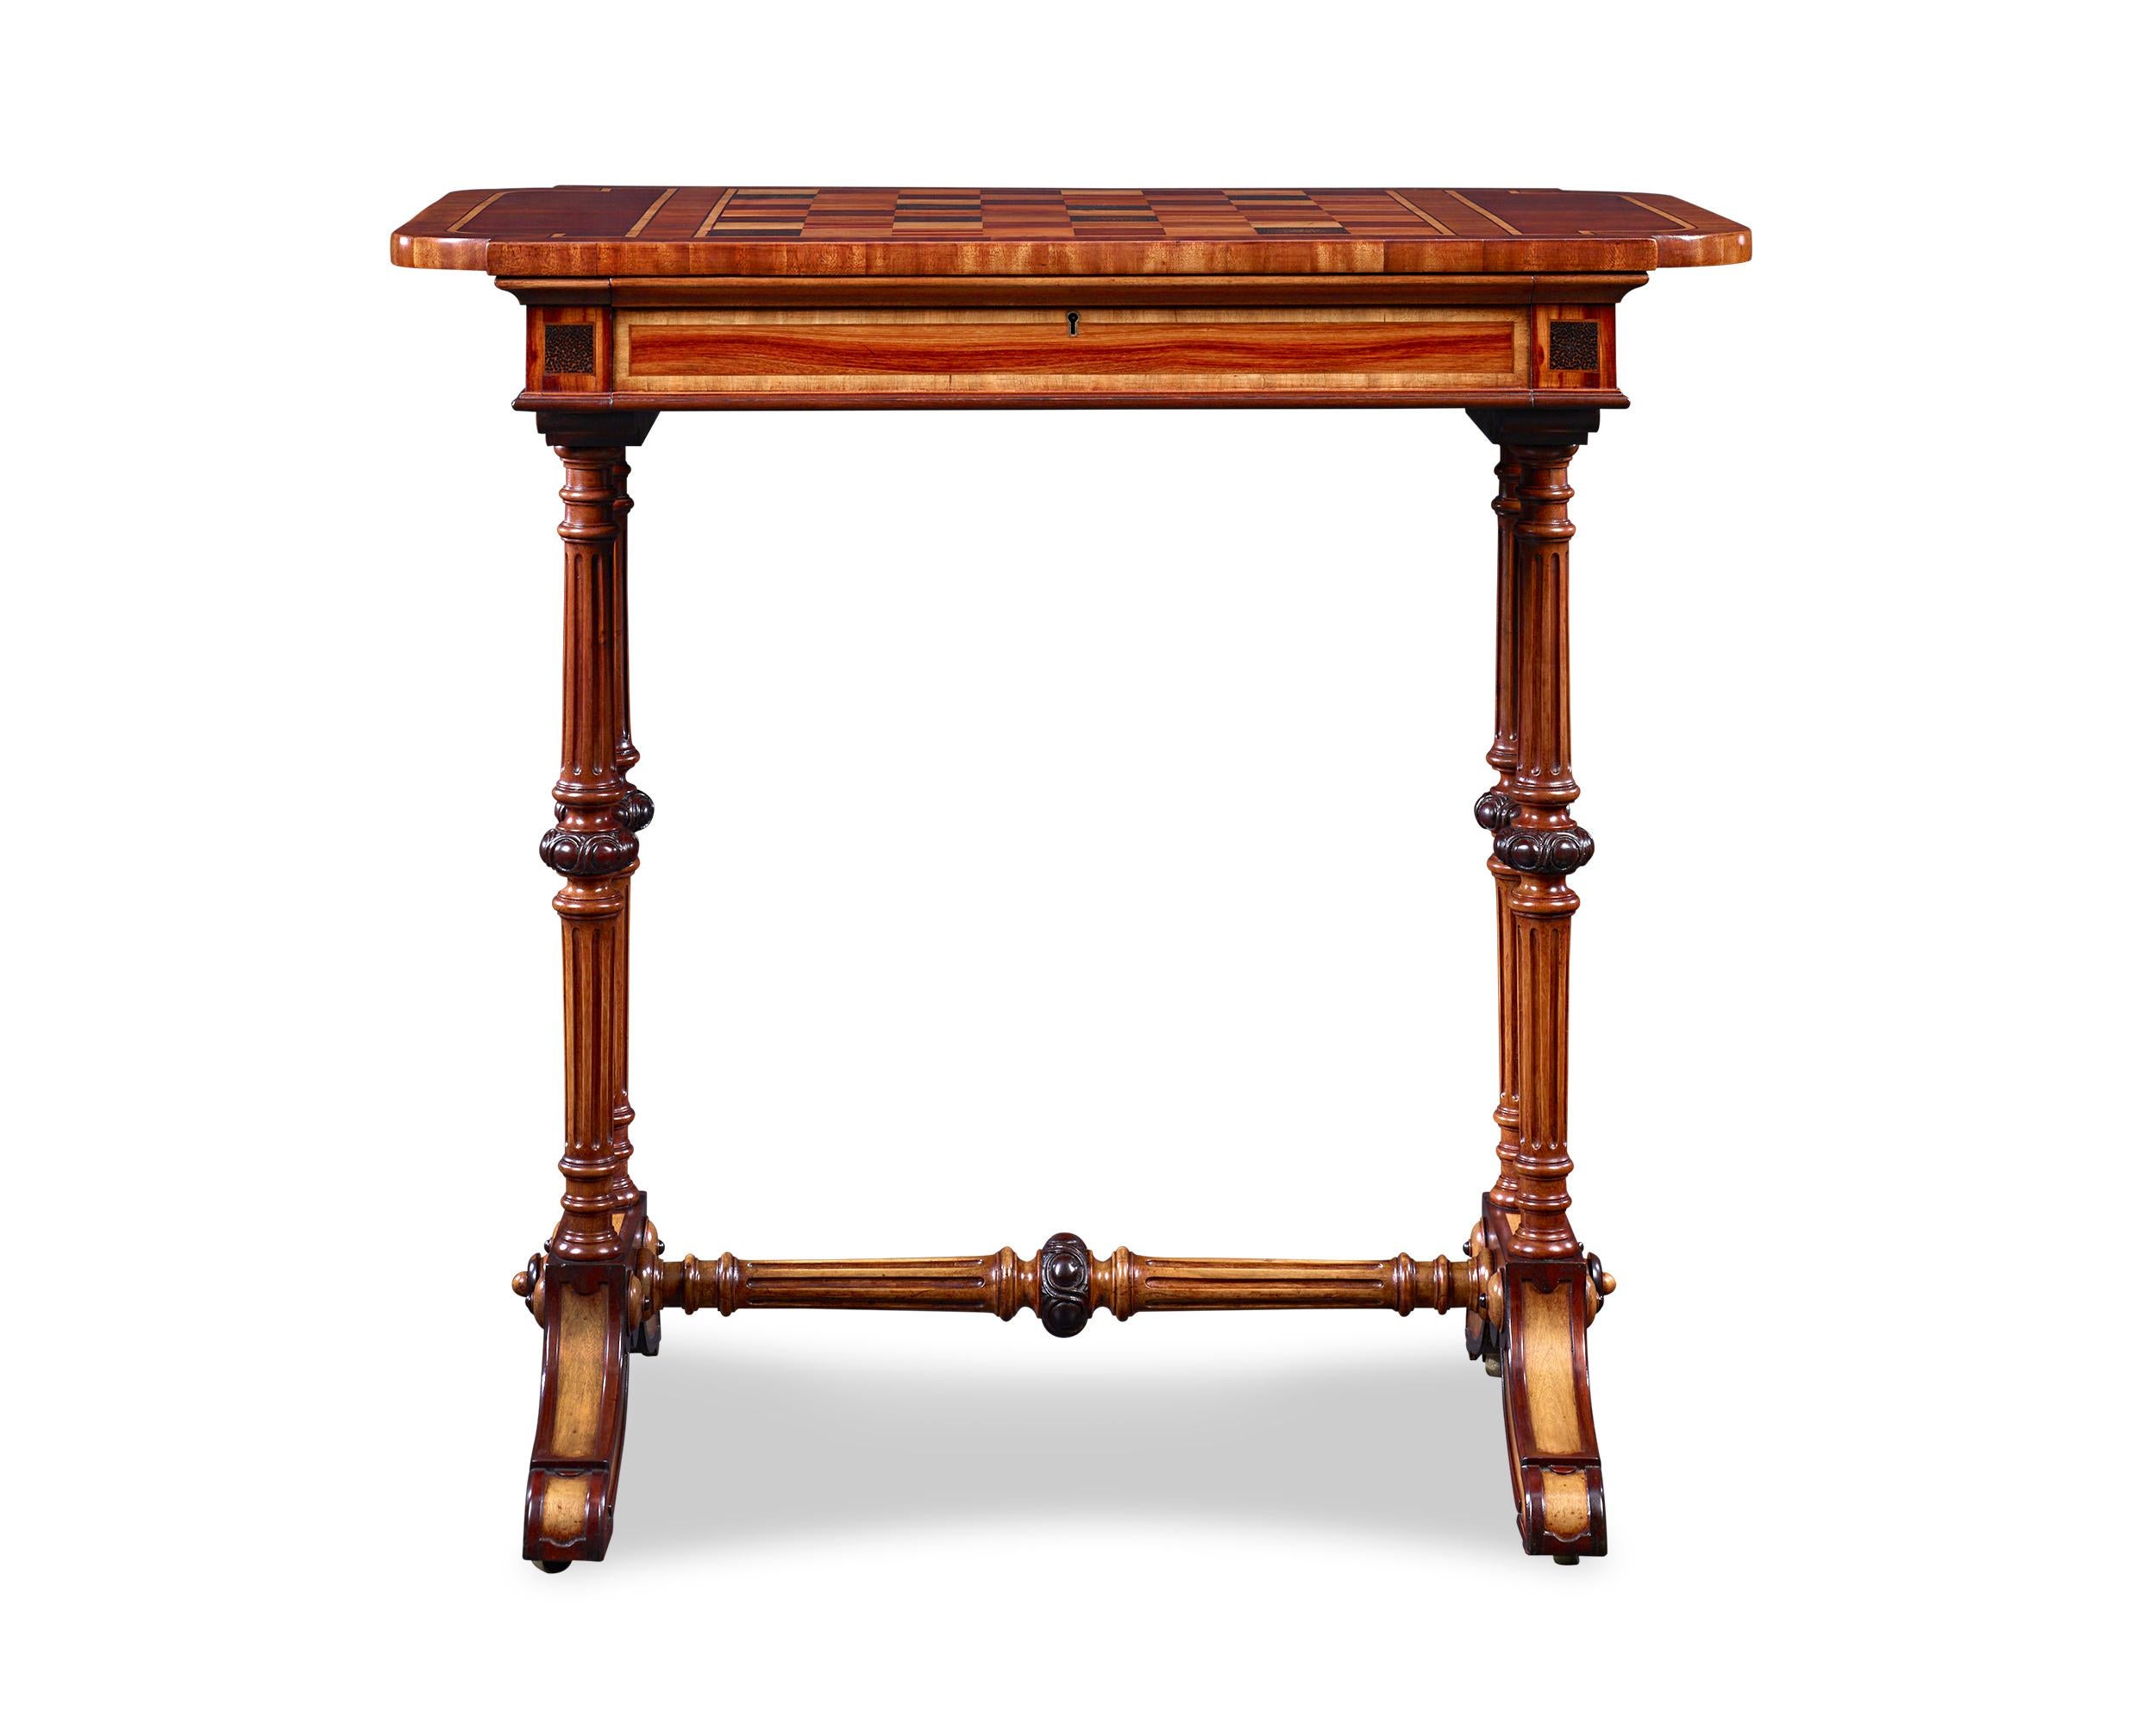 Dieser außergewöhnliche westindische Spieltisch aus dem 19. Jahrhundert ist mit einer Reihe exotischer karibischer und südamerikanischer Hölzer ausgestattet. Der Tisch, der an die Entwürfe des großen schottischen Möbelherstellers Ralph Turnbull